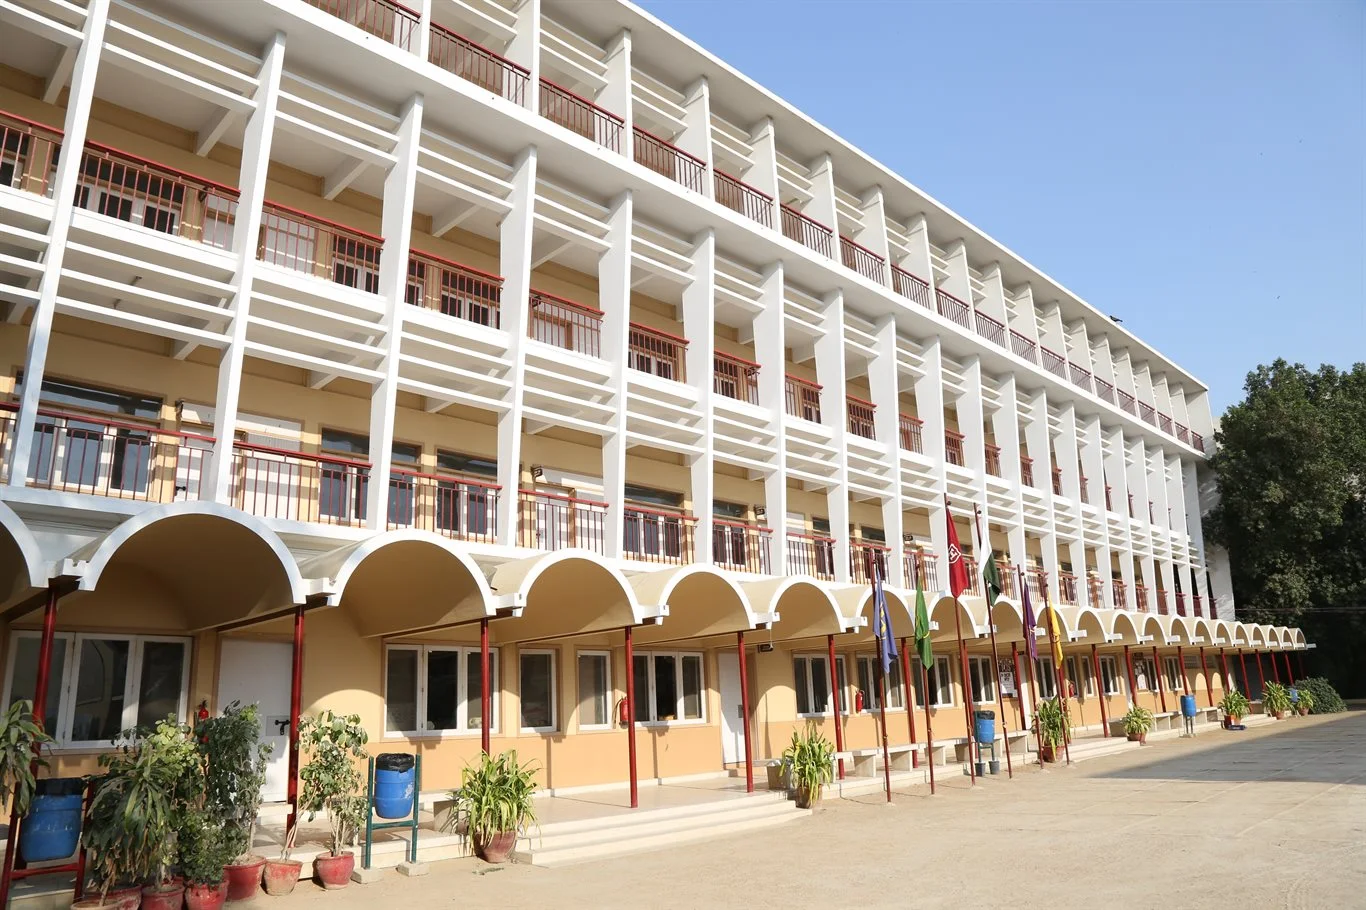 Habib School Building View